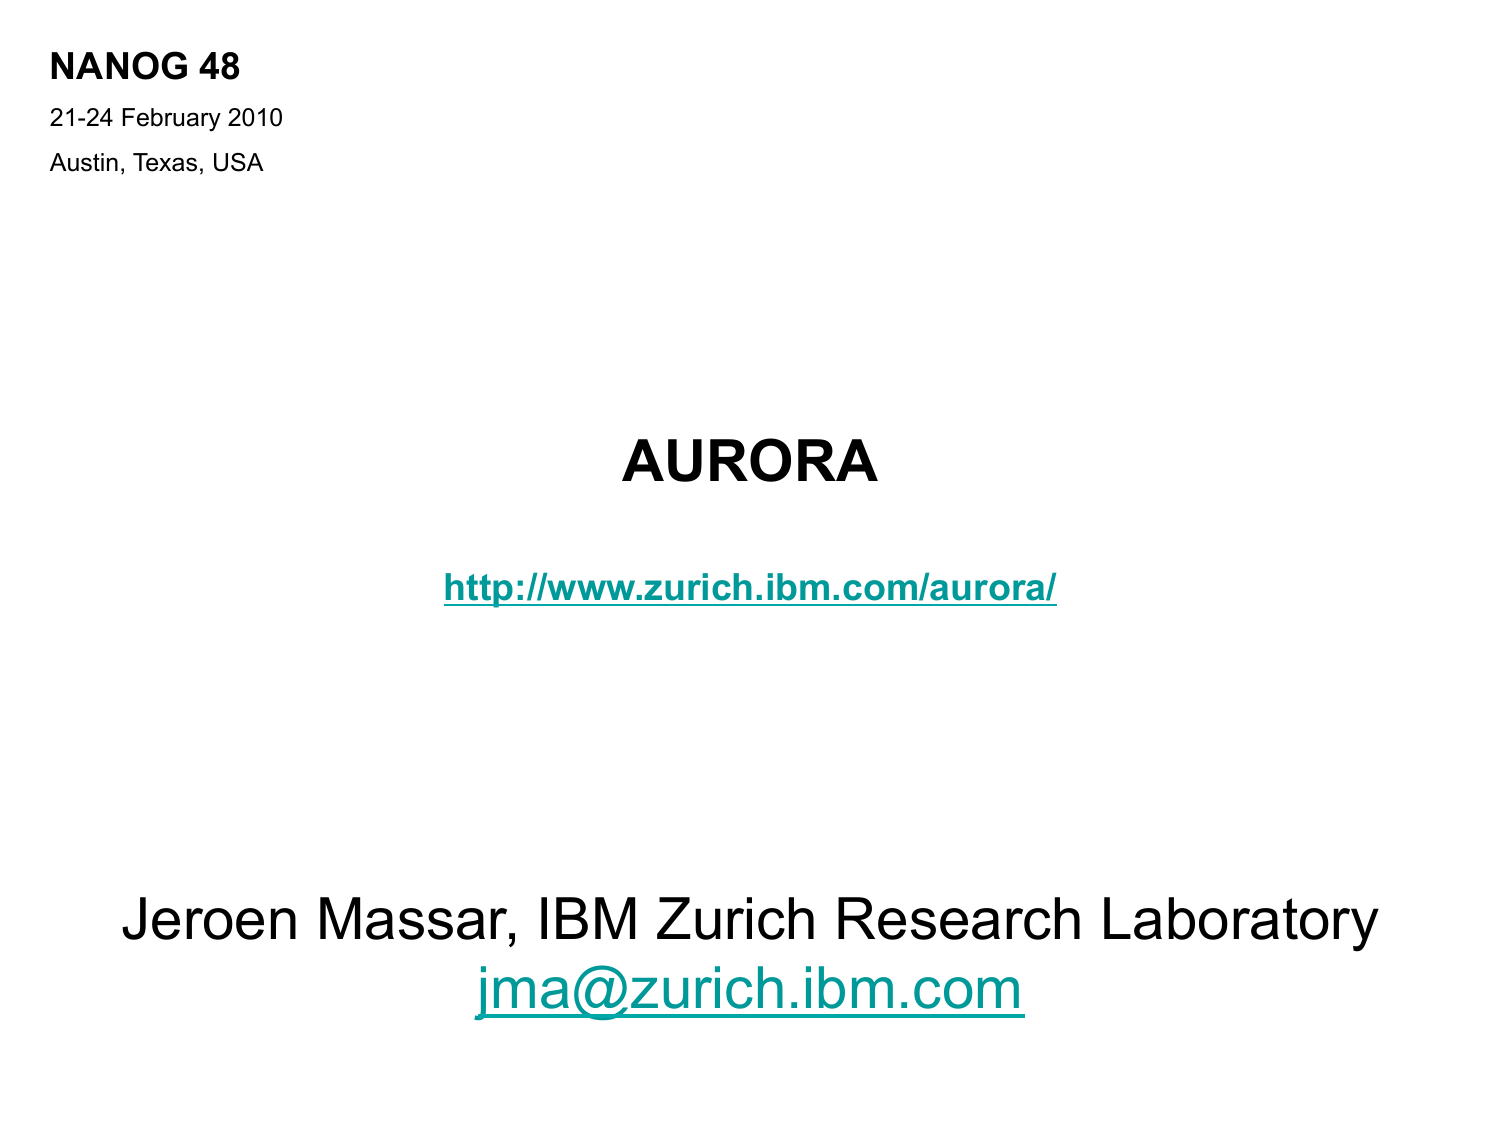 AURORA First Slide Image